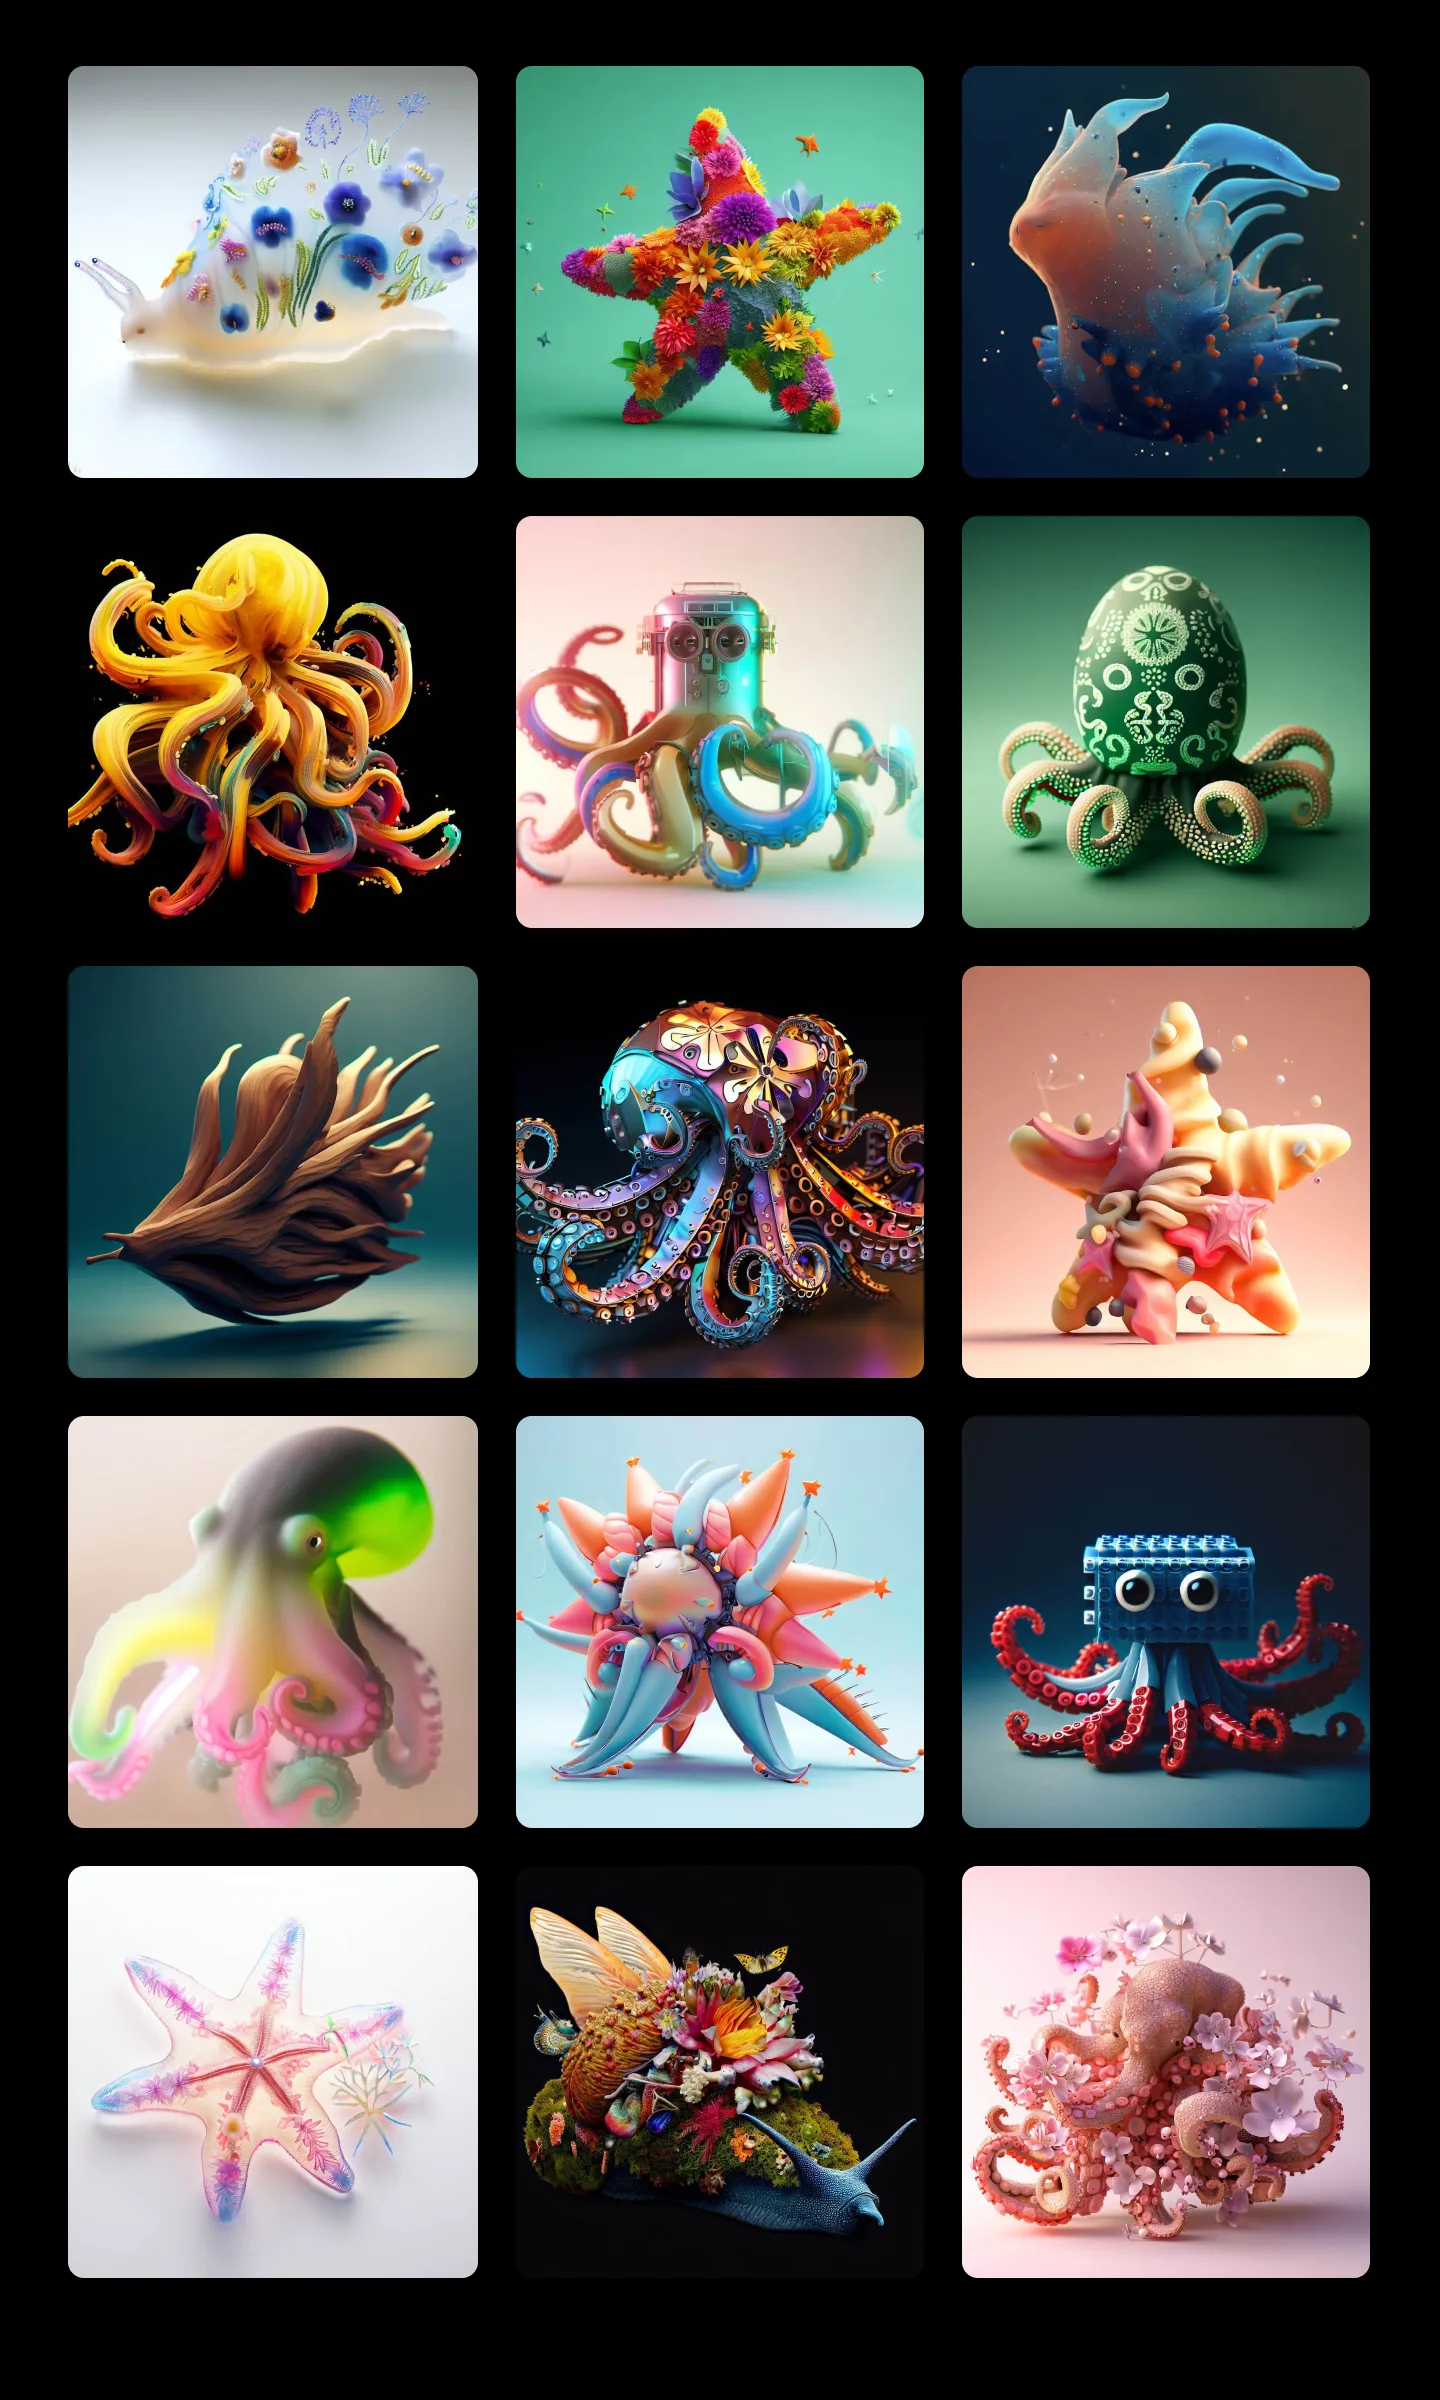 Octopus pack - screenshots.